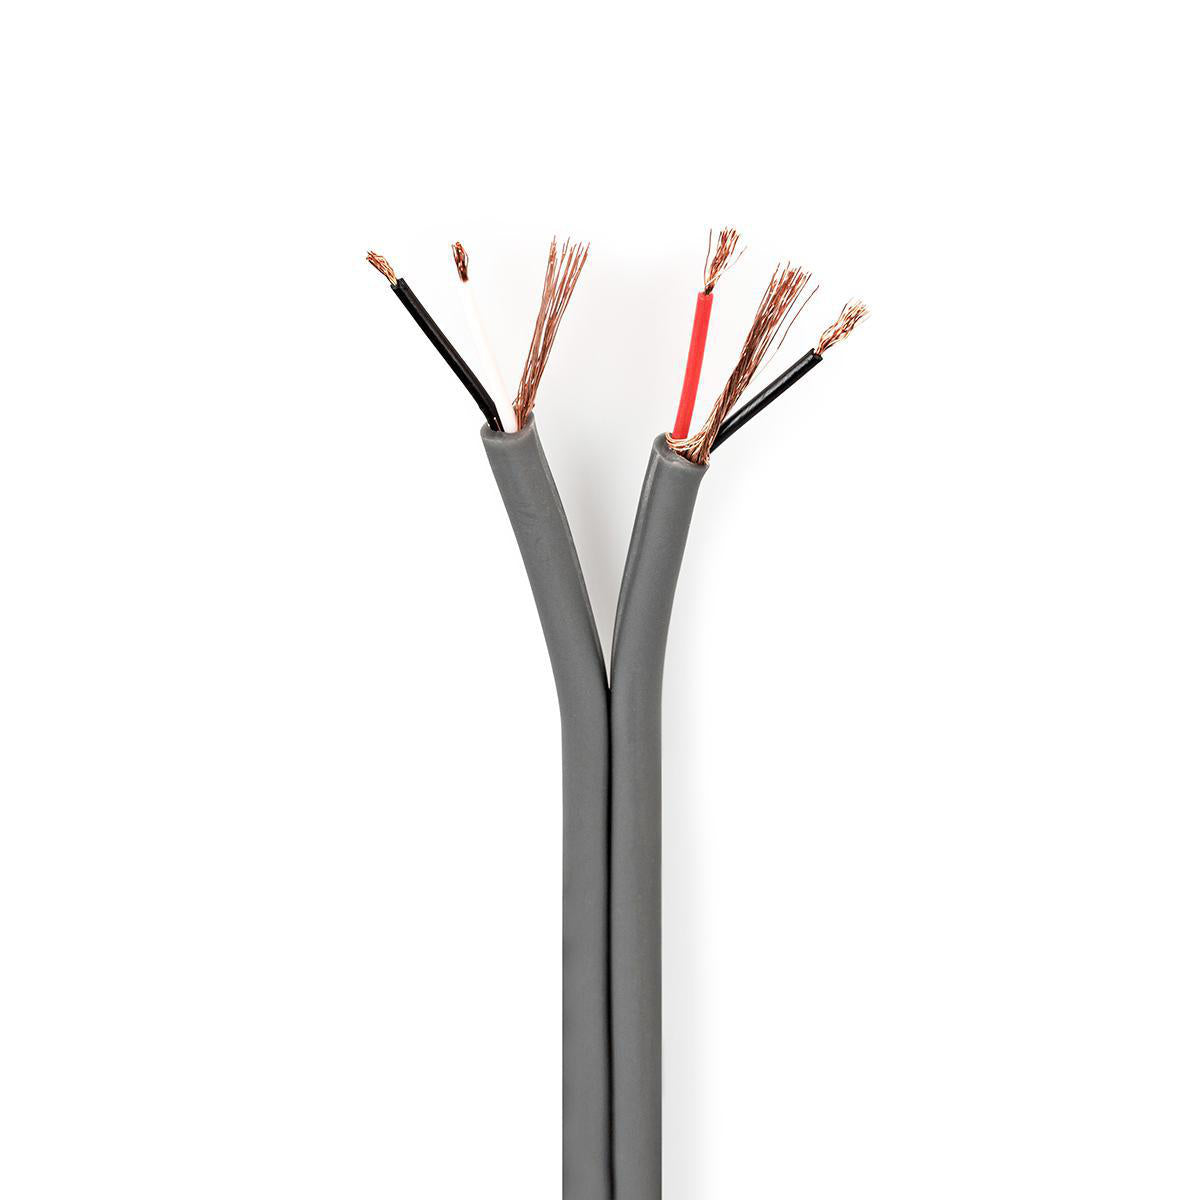 Audio Kabel | 2x 0.16 mm² | Kupfer | 100.0 m | Rund | PVC | Dunkelgrau | Rolle